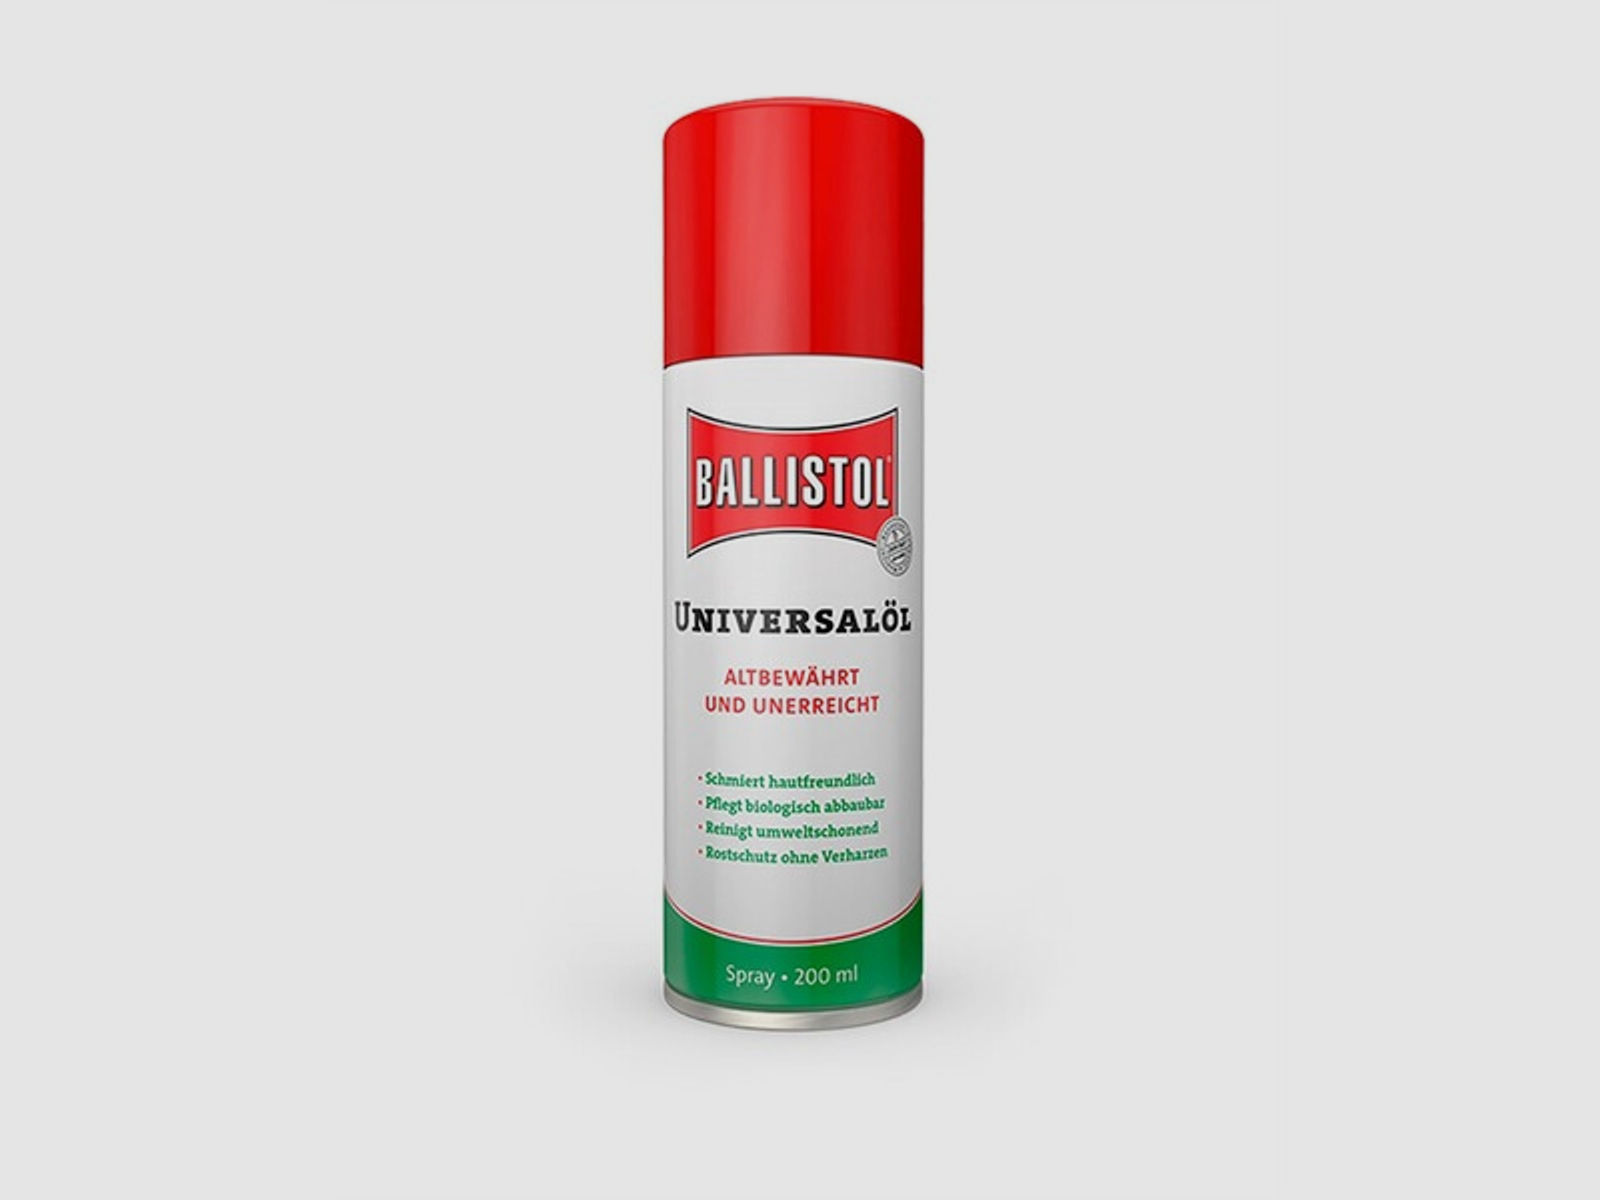 Ballistol ® Universalöl - Spray 200ml - Der Klassiker zur Pflege von Holz, Leder und Metall